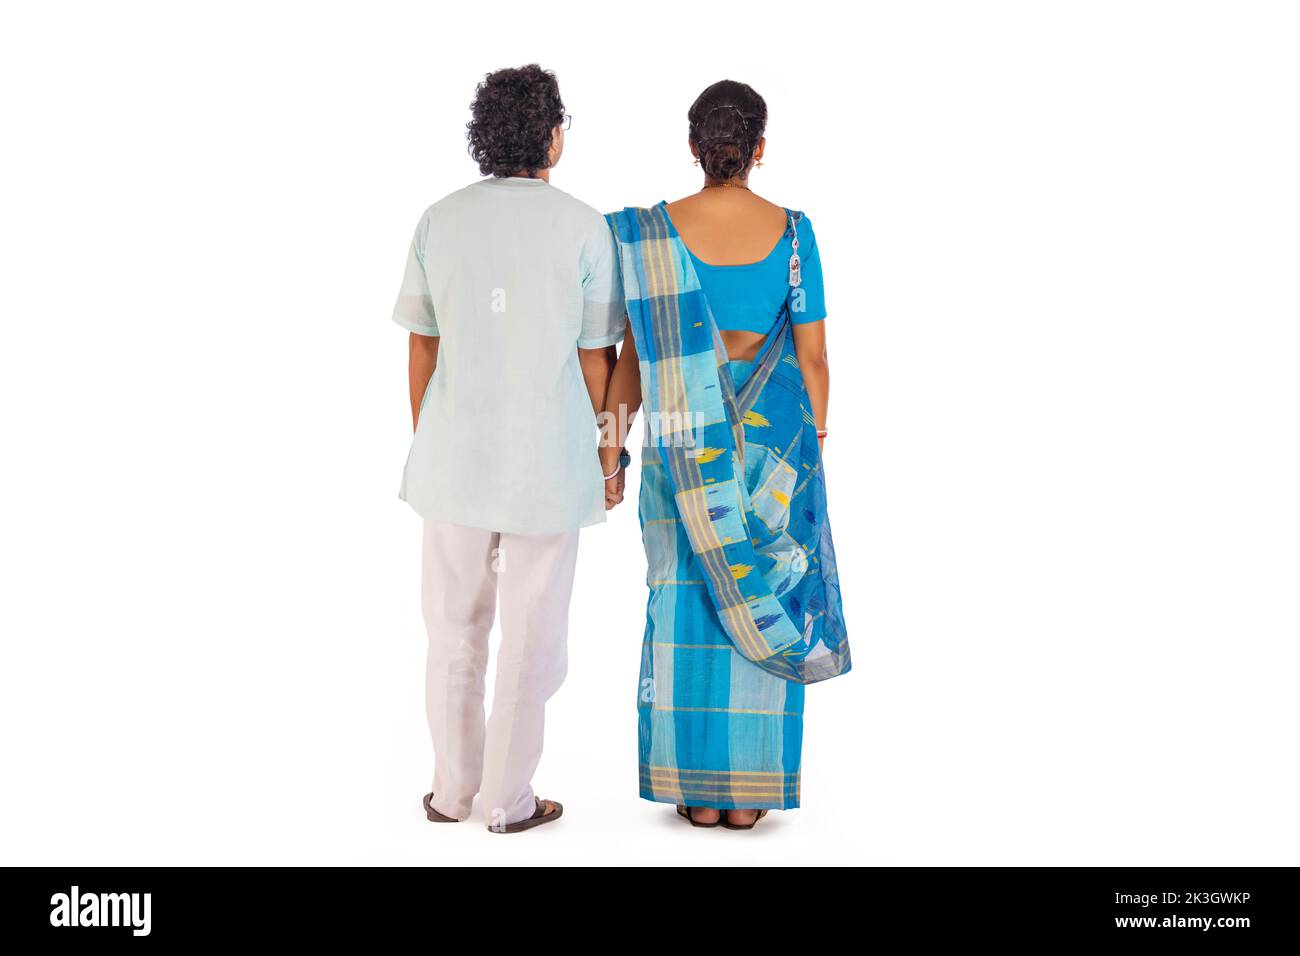 Rückansicht des bengalischen Paares, das vor weißem Hintergrund steht Stockfoto